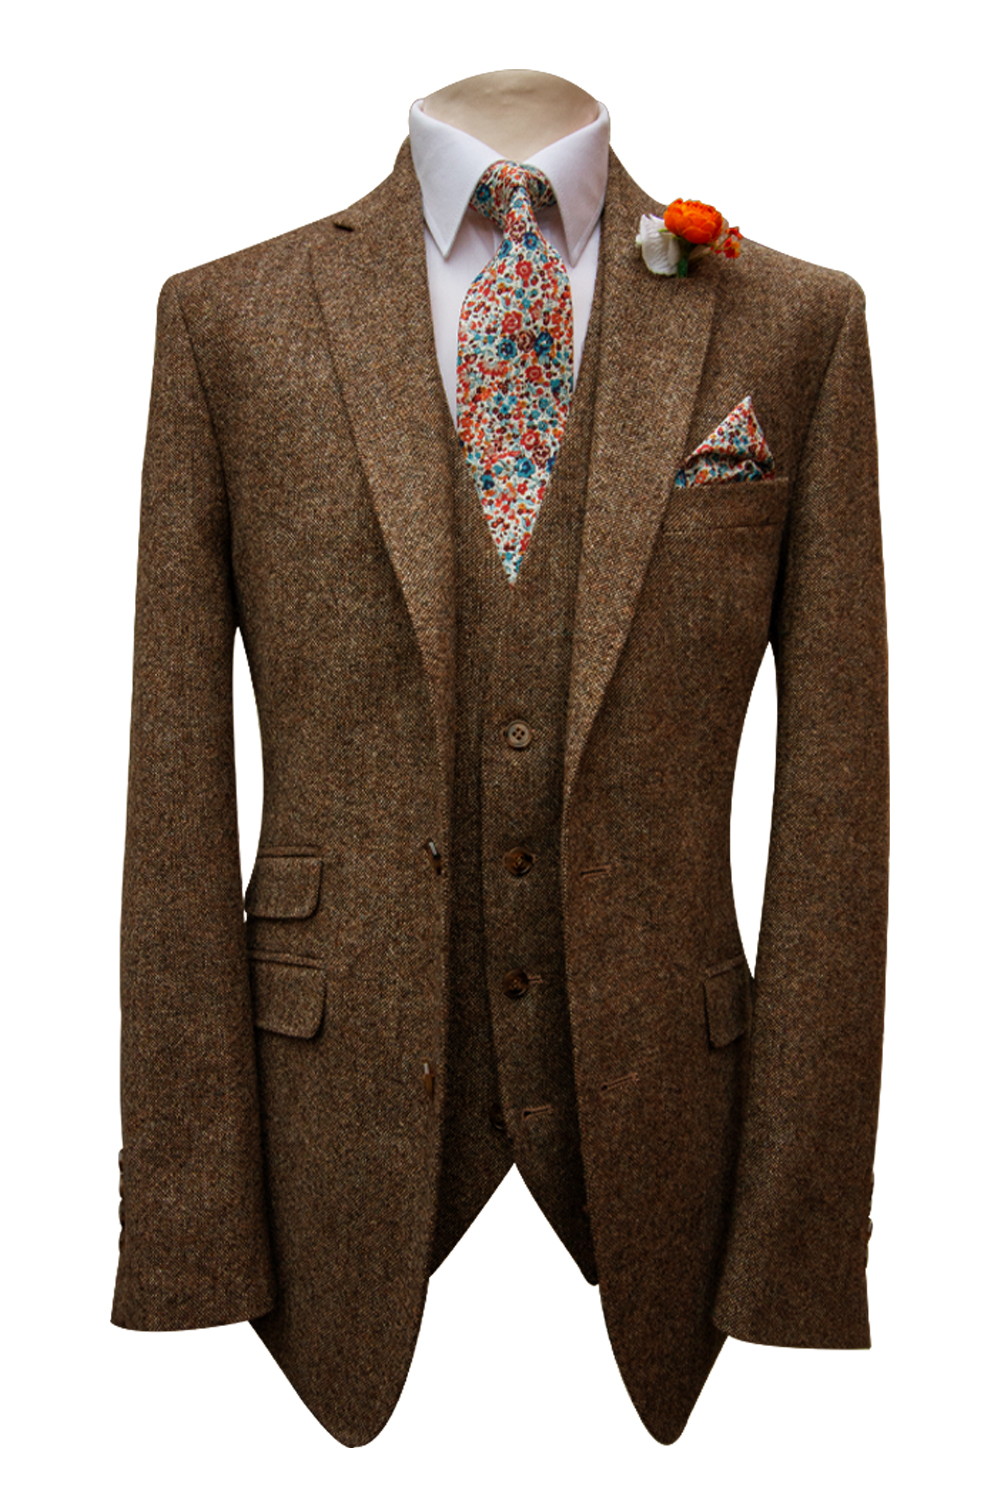 Brown Tweed Suit For Wedding Grooms in Berkshire, Hampshire, Surrey